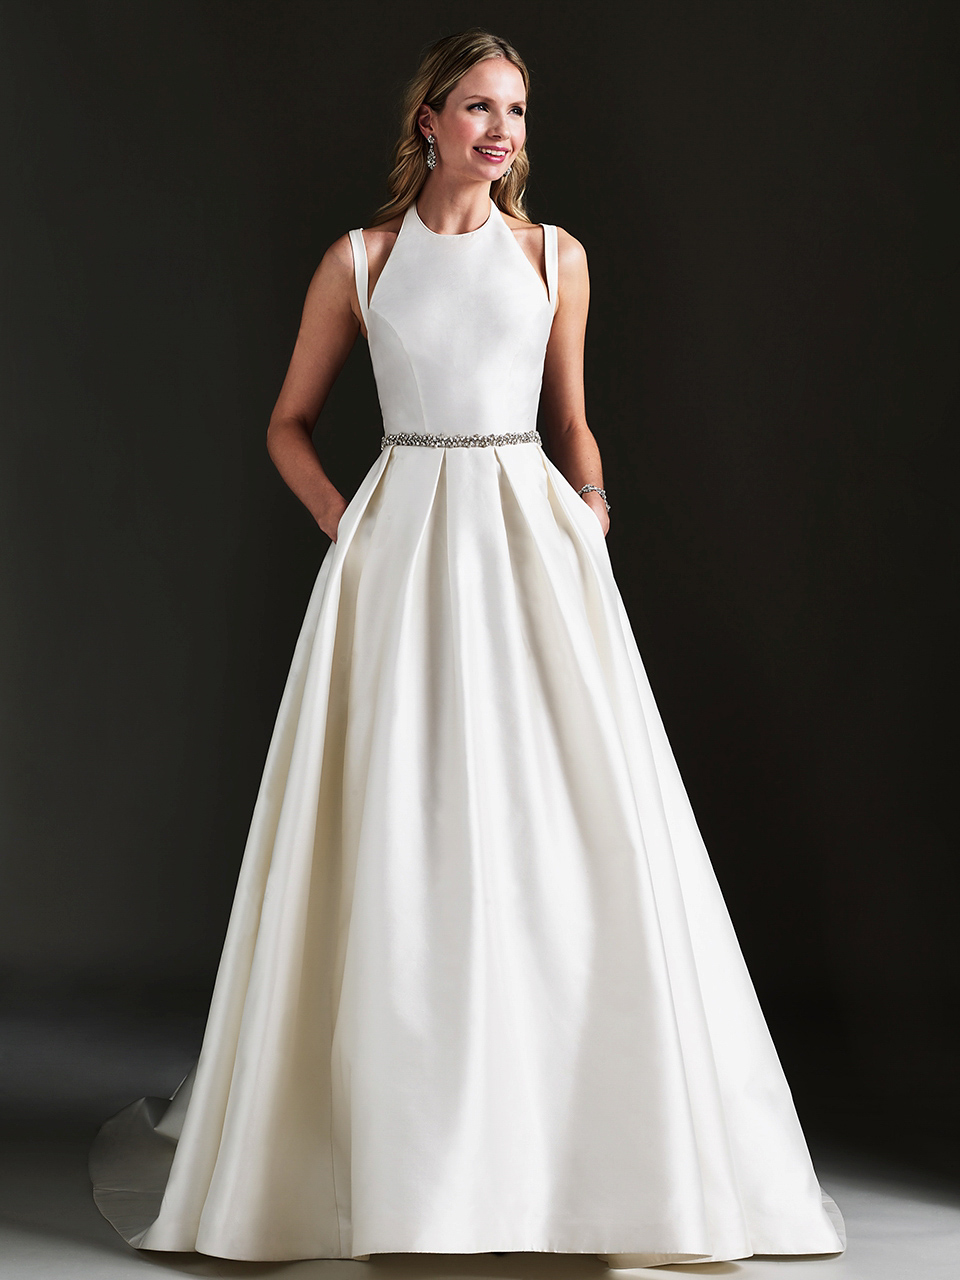 Effortlessly elegant - wedding gowns by Caroilne Castigliano.